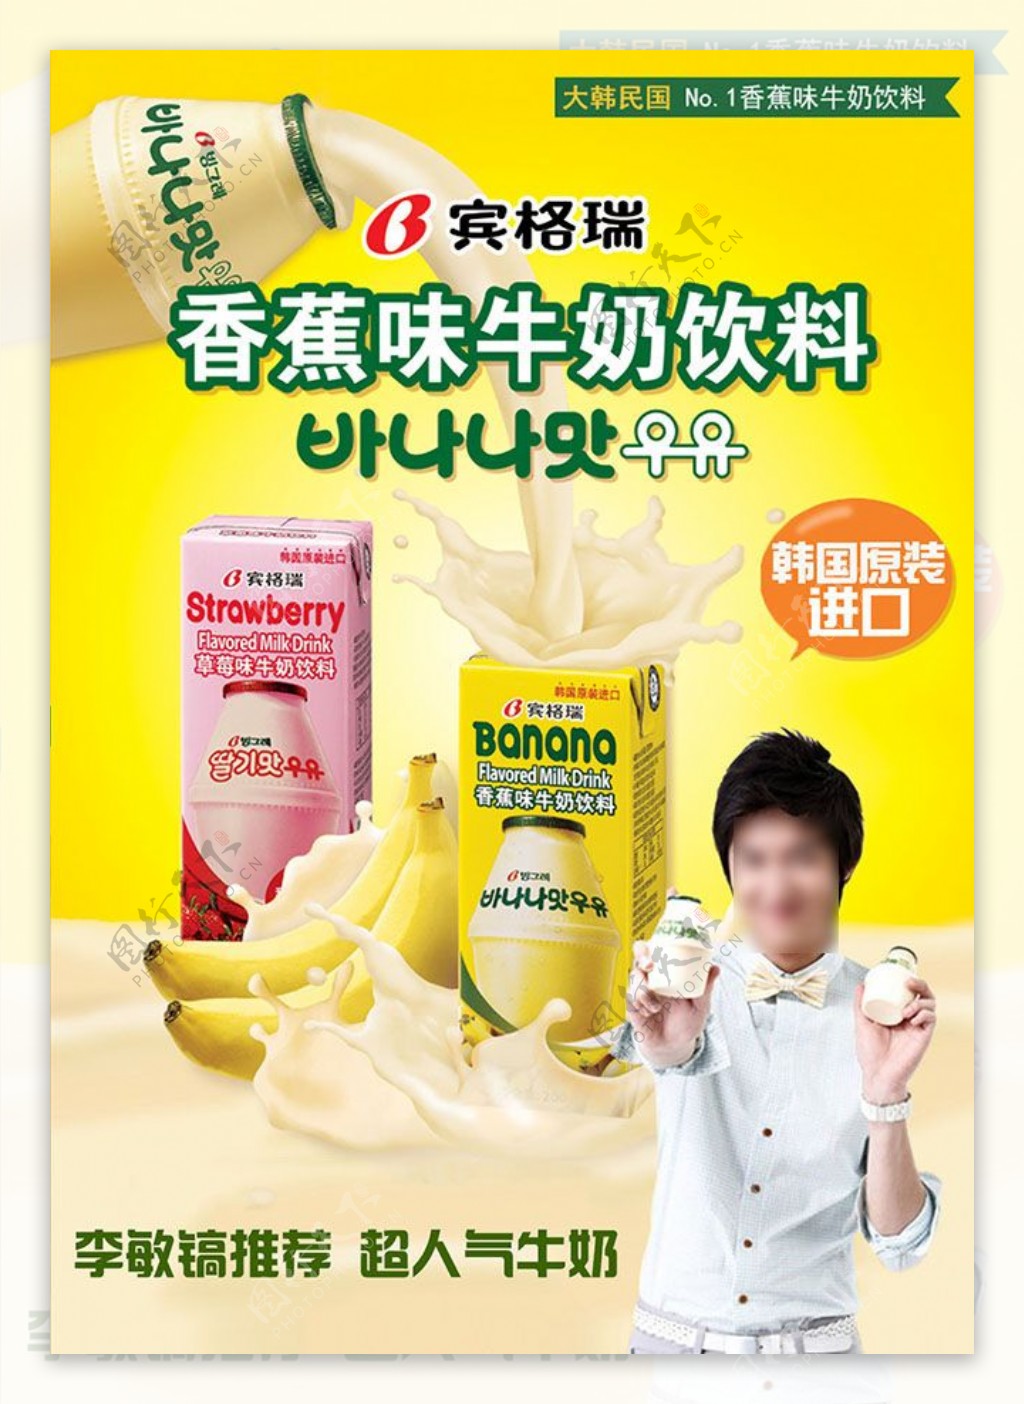 韩国香蕉牛奶海报设计psd素材下载